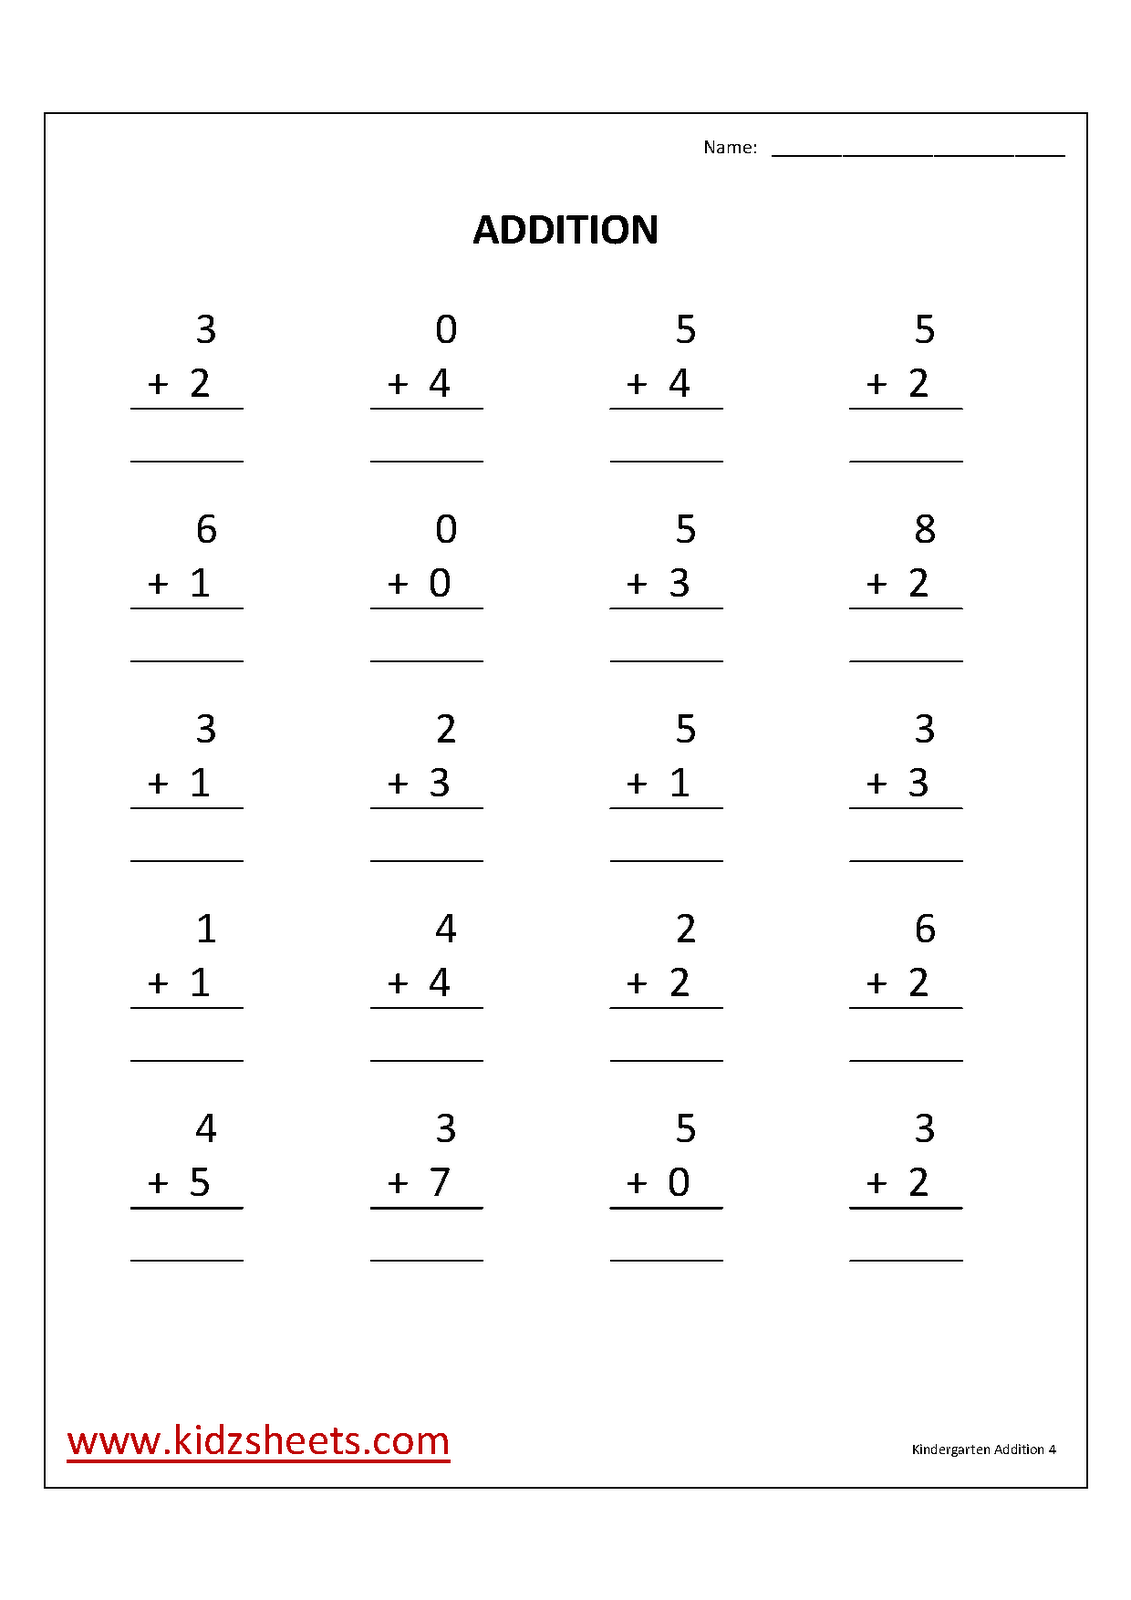 KGAddition4 - Printable Kindergarten Worksheets